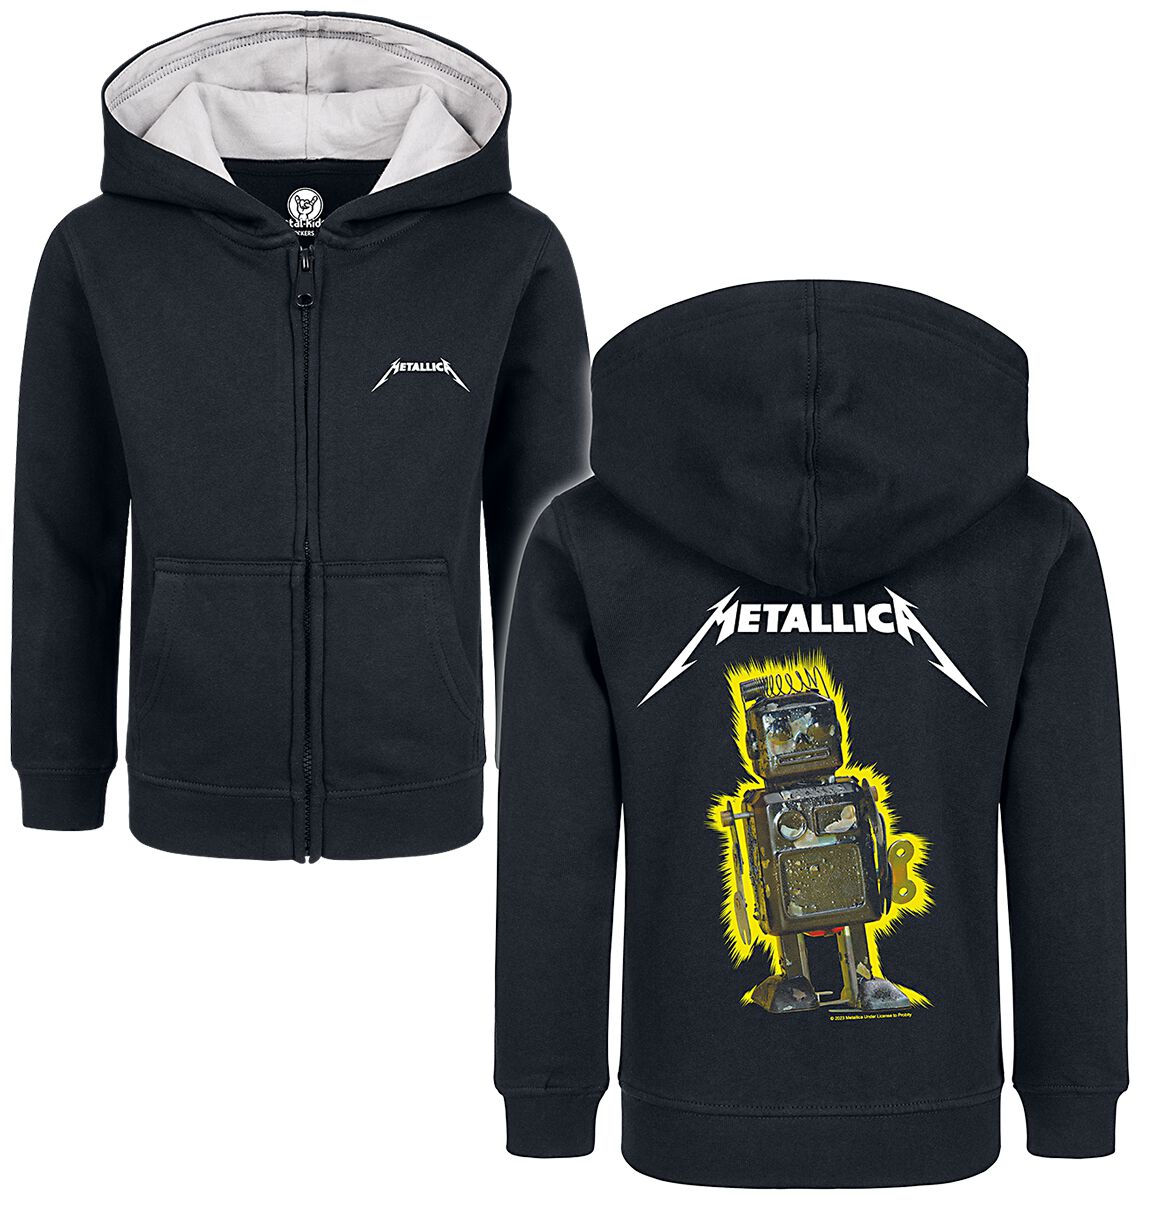 Metallica Kinder-Kapuzenjacke für Kinder - Metal-Kids - Robot Blast - für Mädchen & Jungen - schwarz  - Lizenziertes Merchandise!